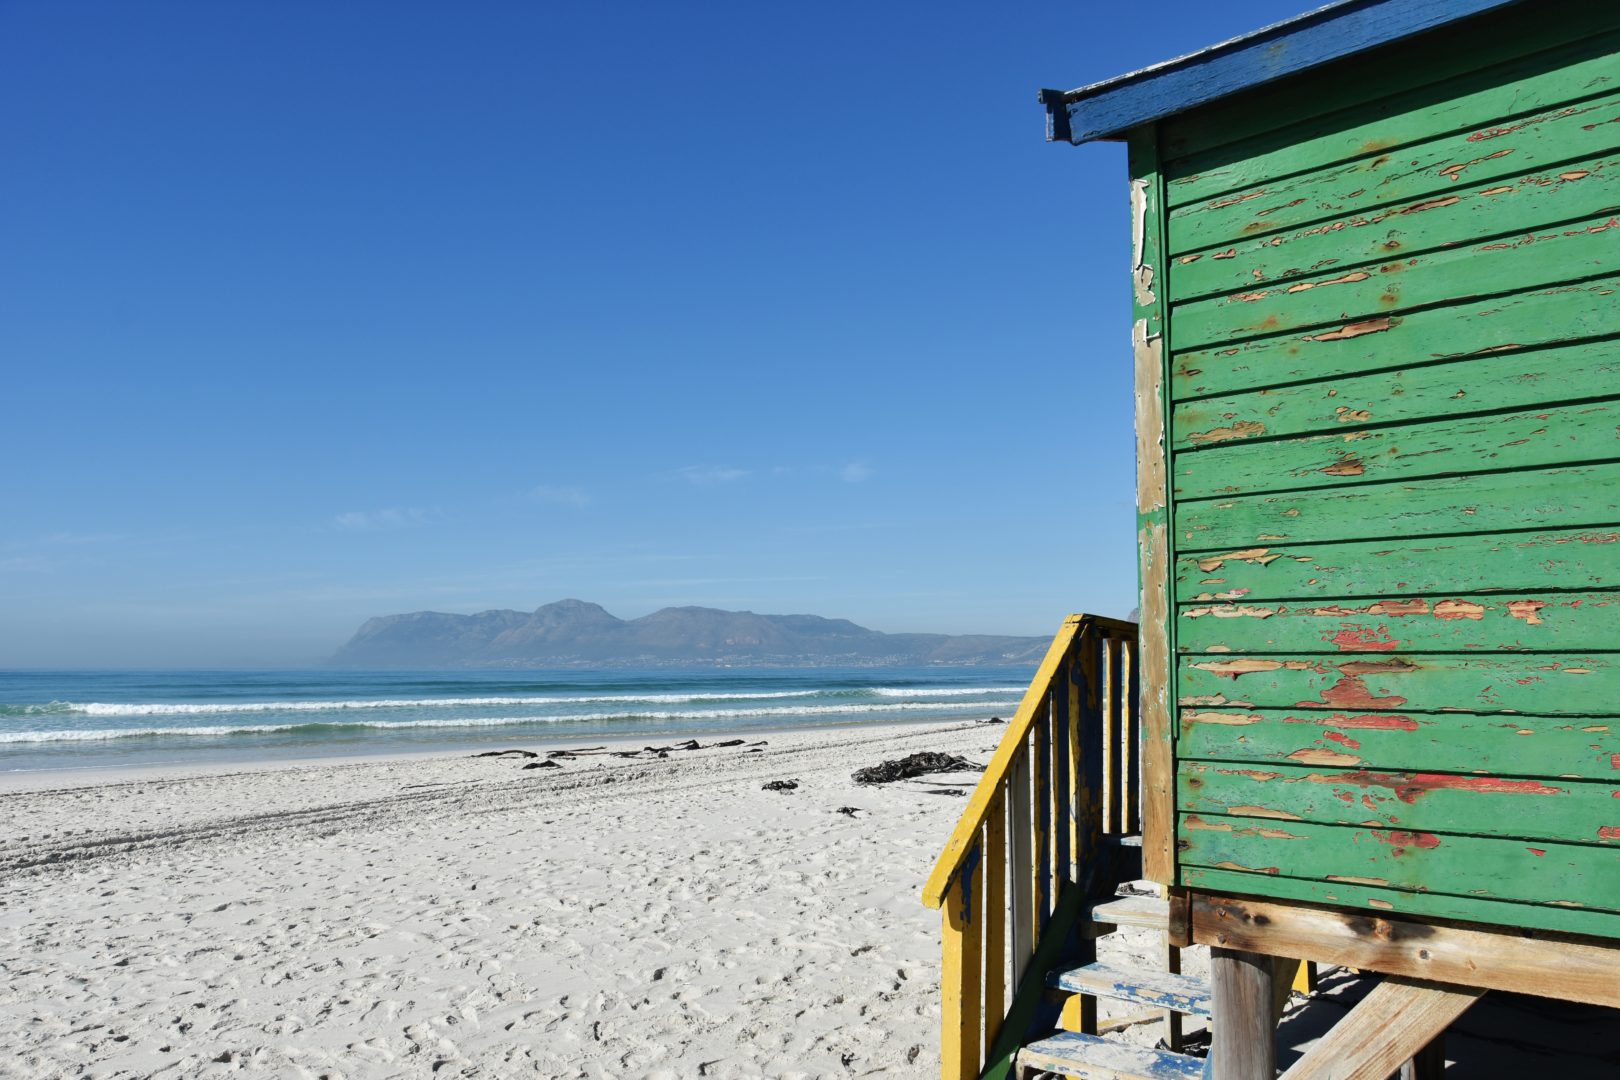 4 giorni tra Cape Town e dintorni: cosa vedere